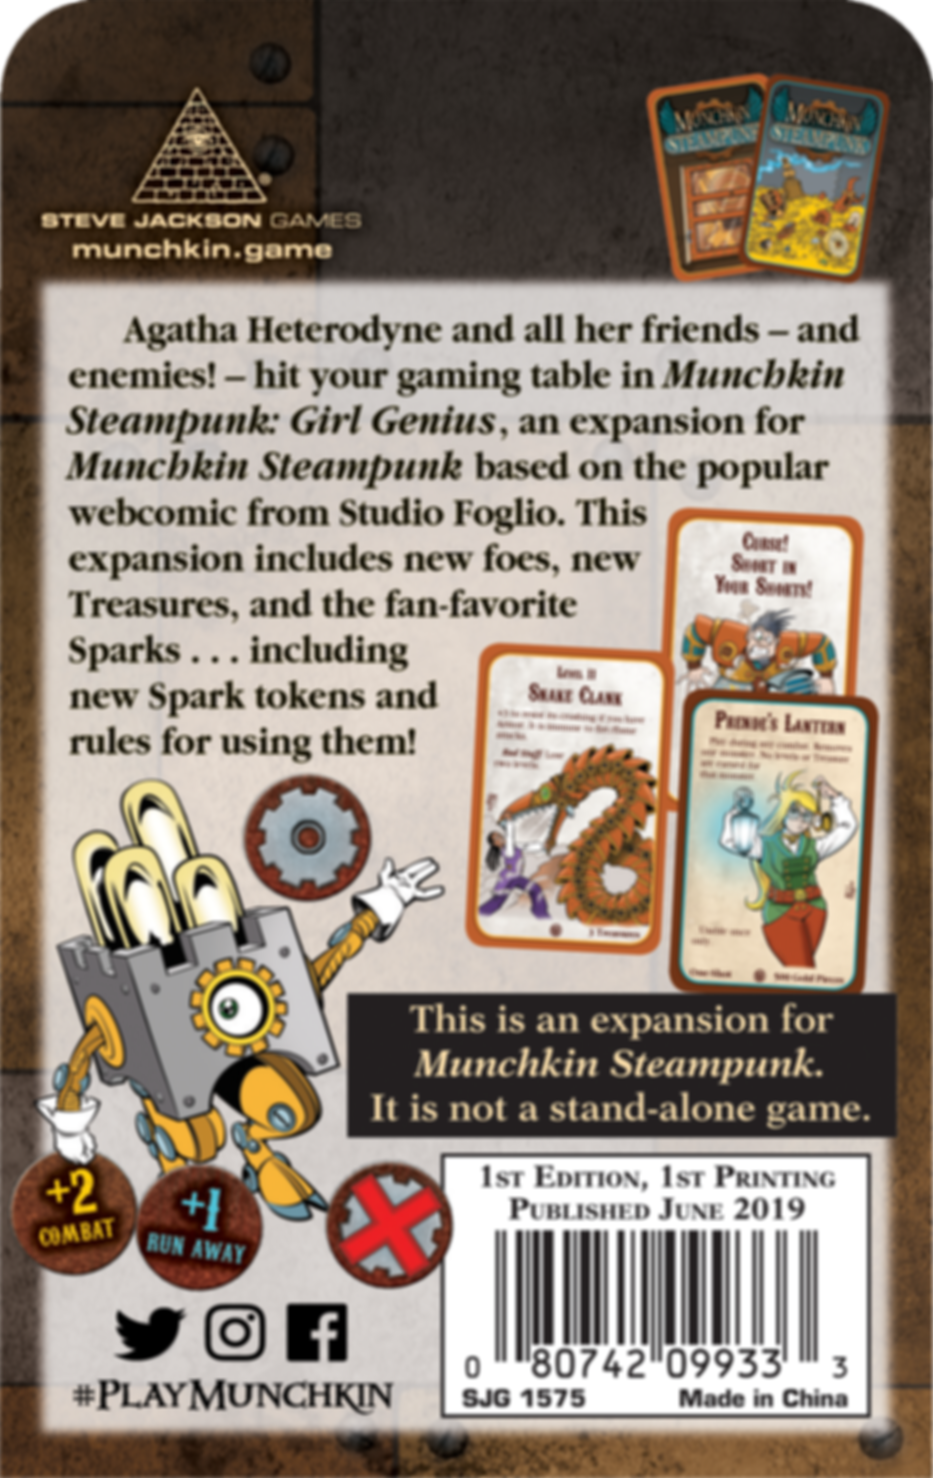 Munchkin Steampunk: Girl Genius dos de la boîte